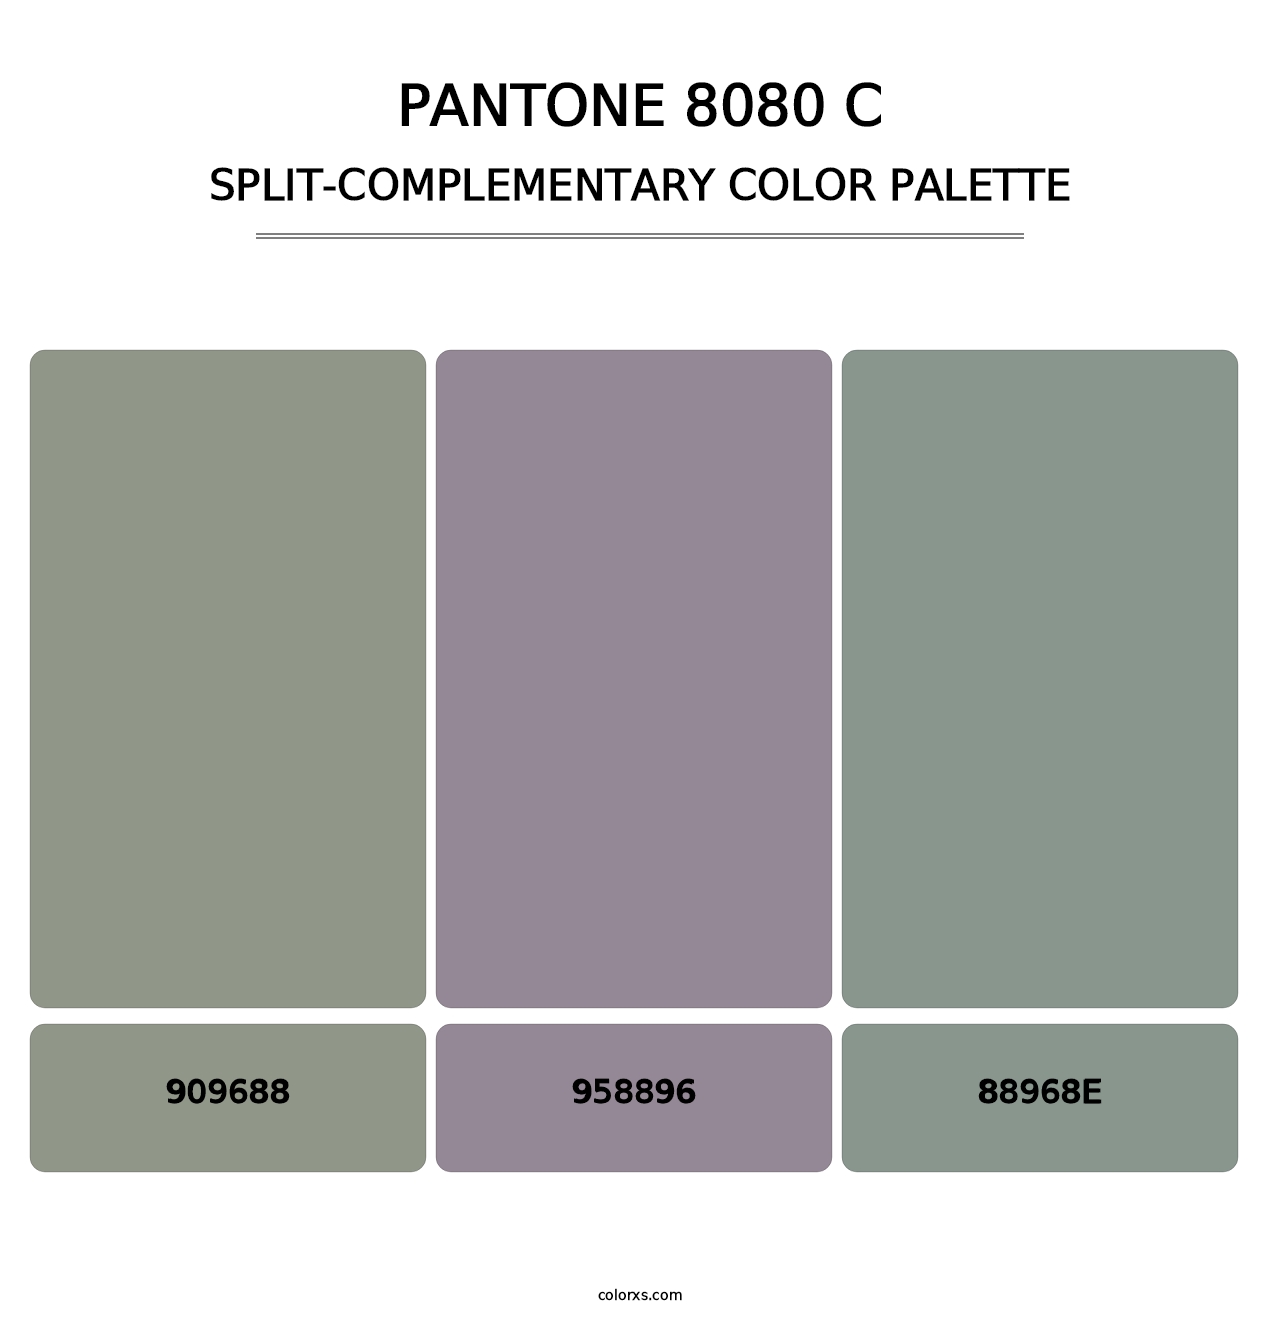 PANTONE 8080 C - Split-Complementary Color Palette